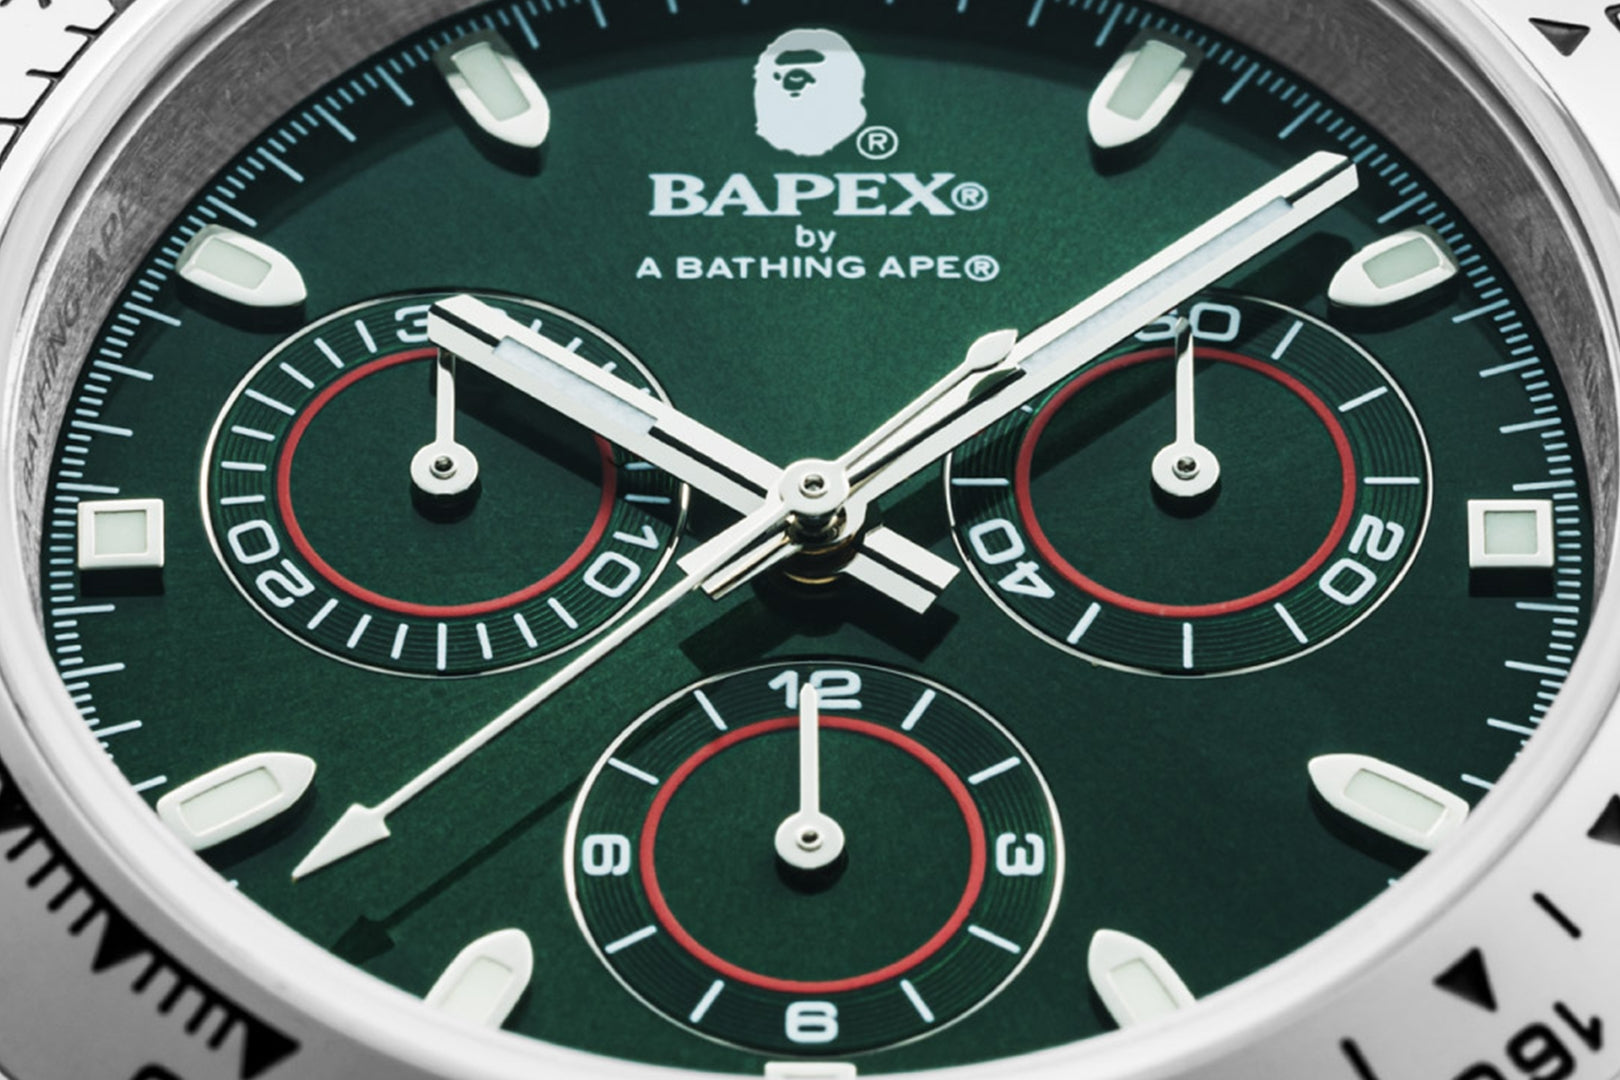 新品BAPEVintage Type 2 BAPEX Watch ツートーン定価67100円